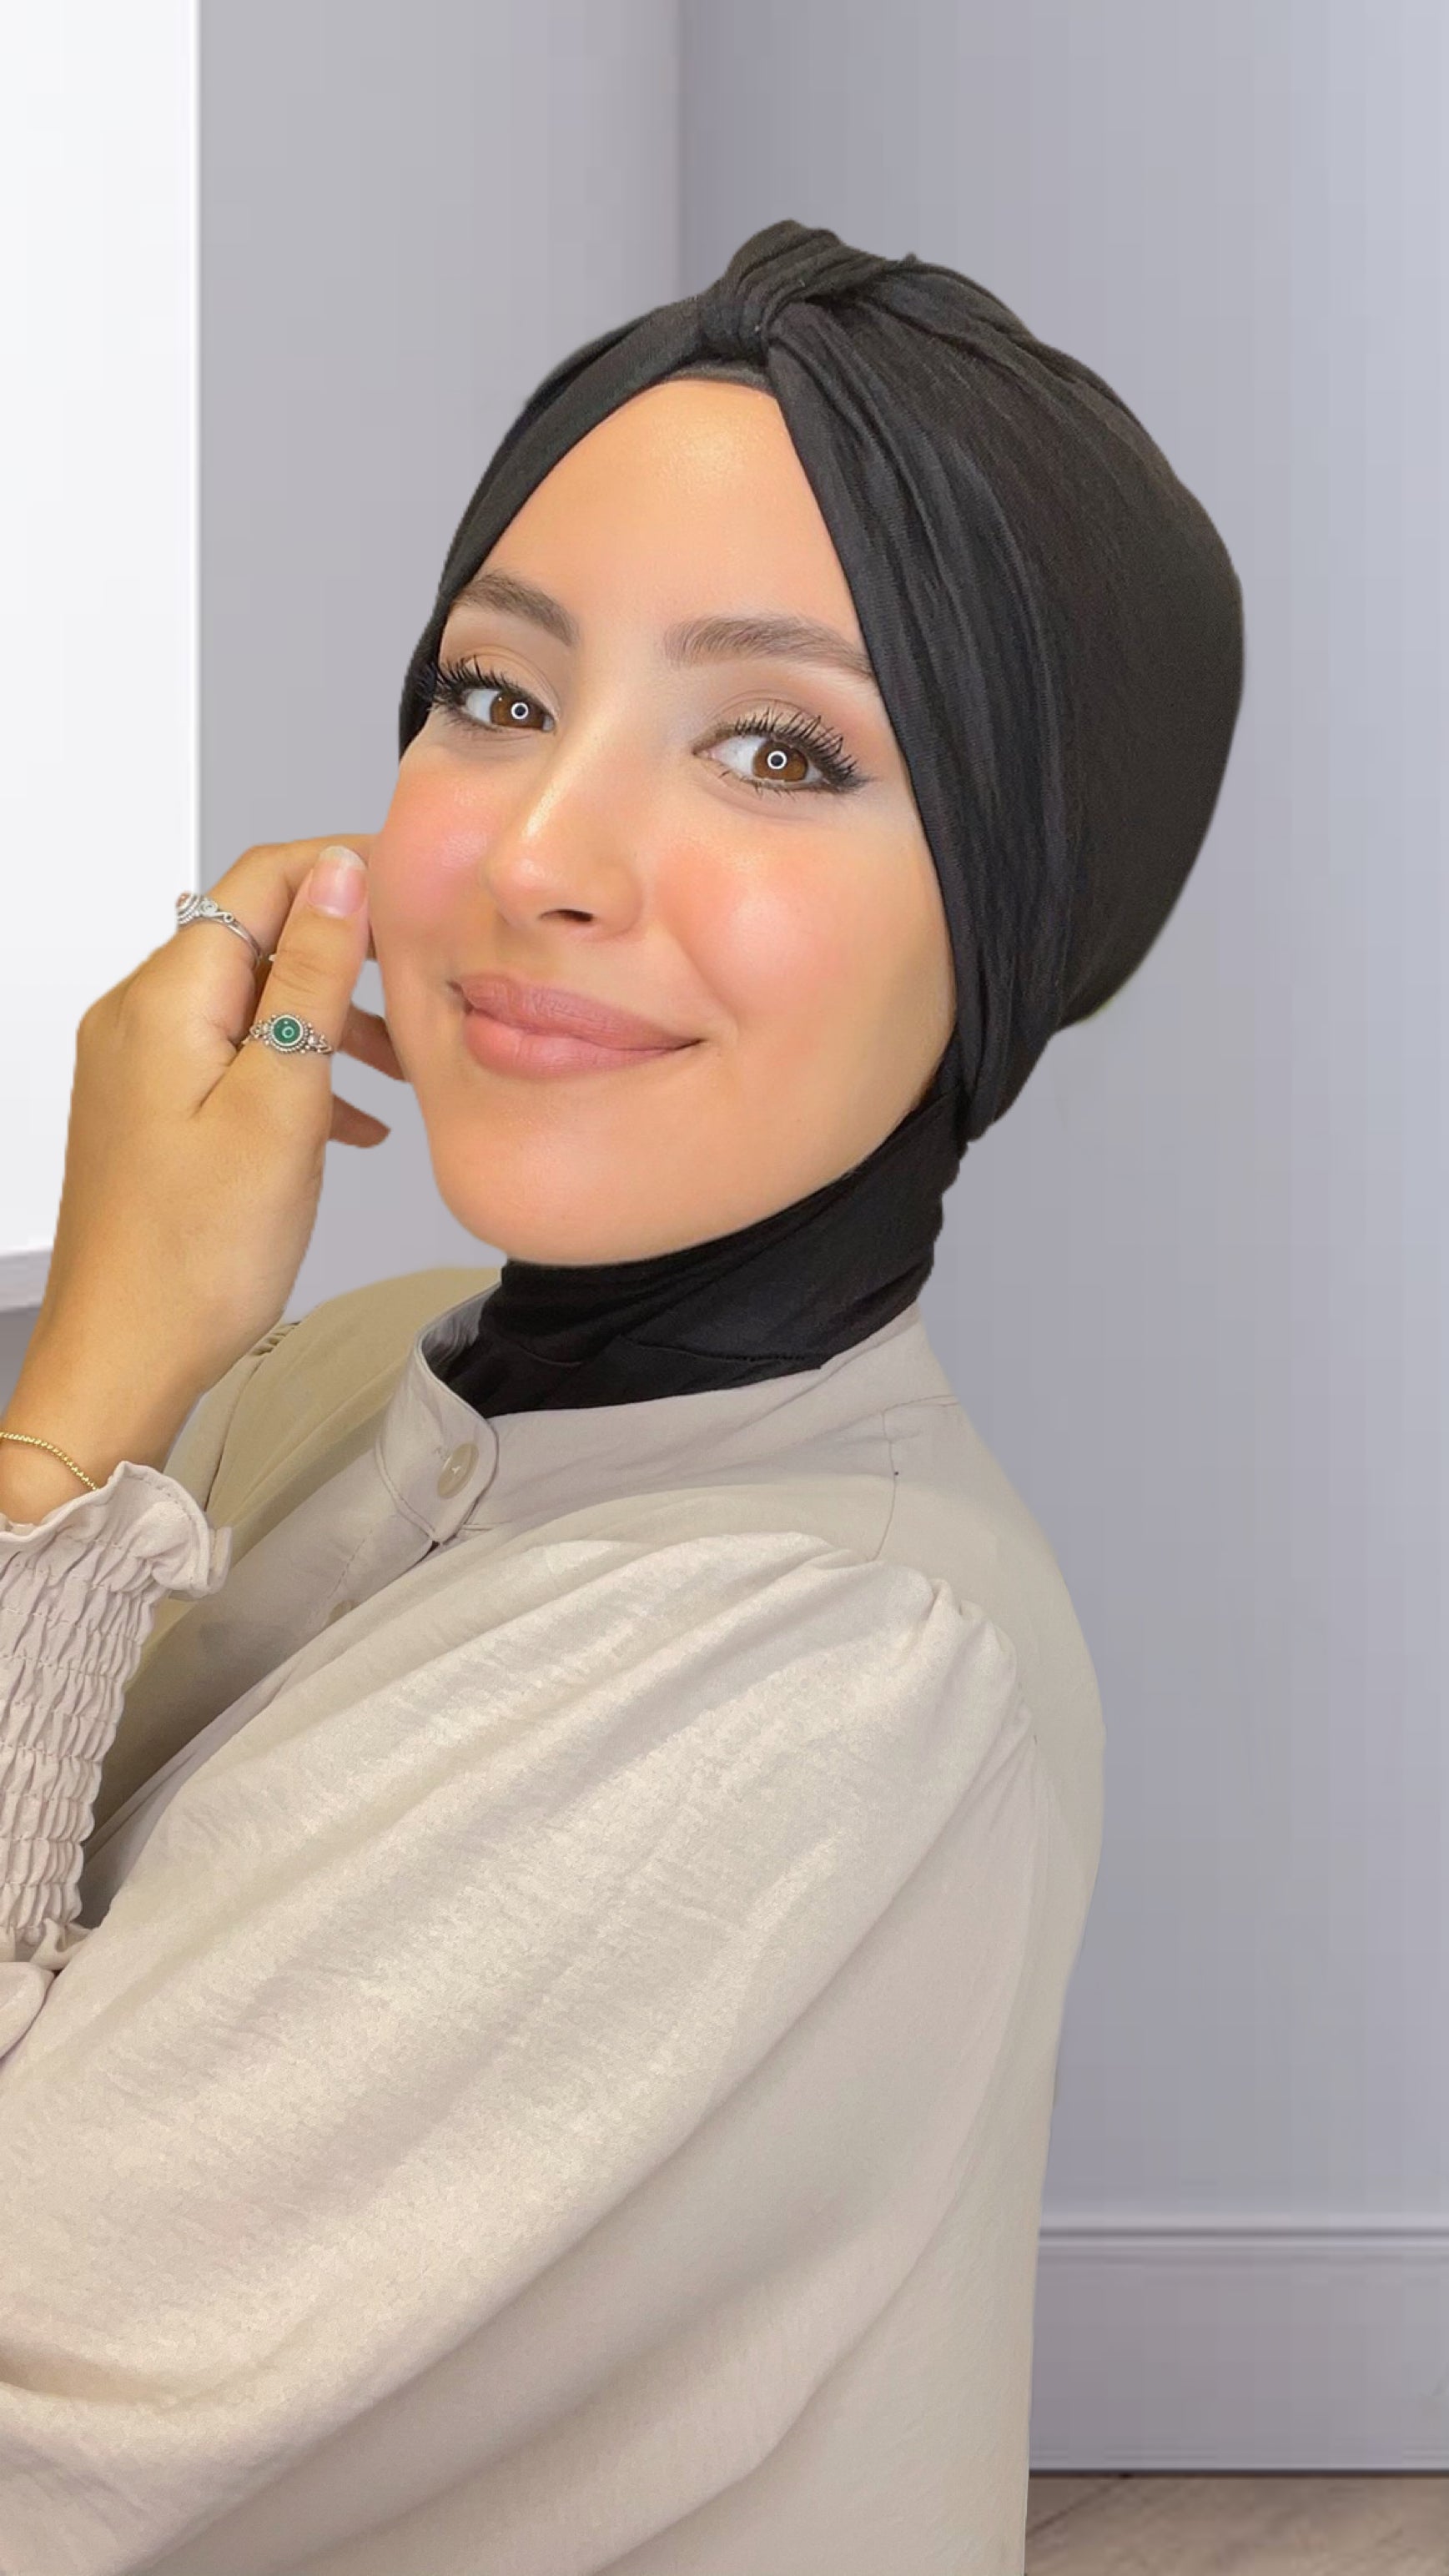 Cuffia Turbante - Hijab Paradise 